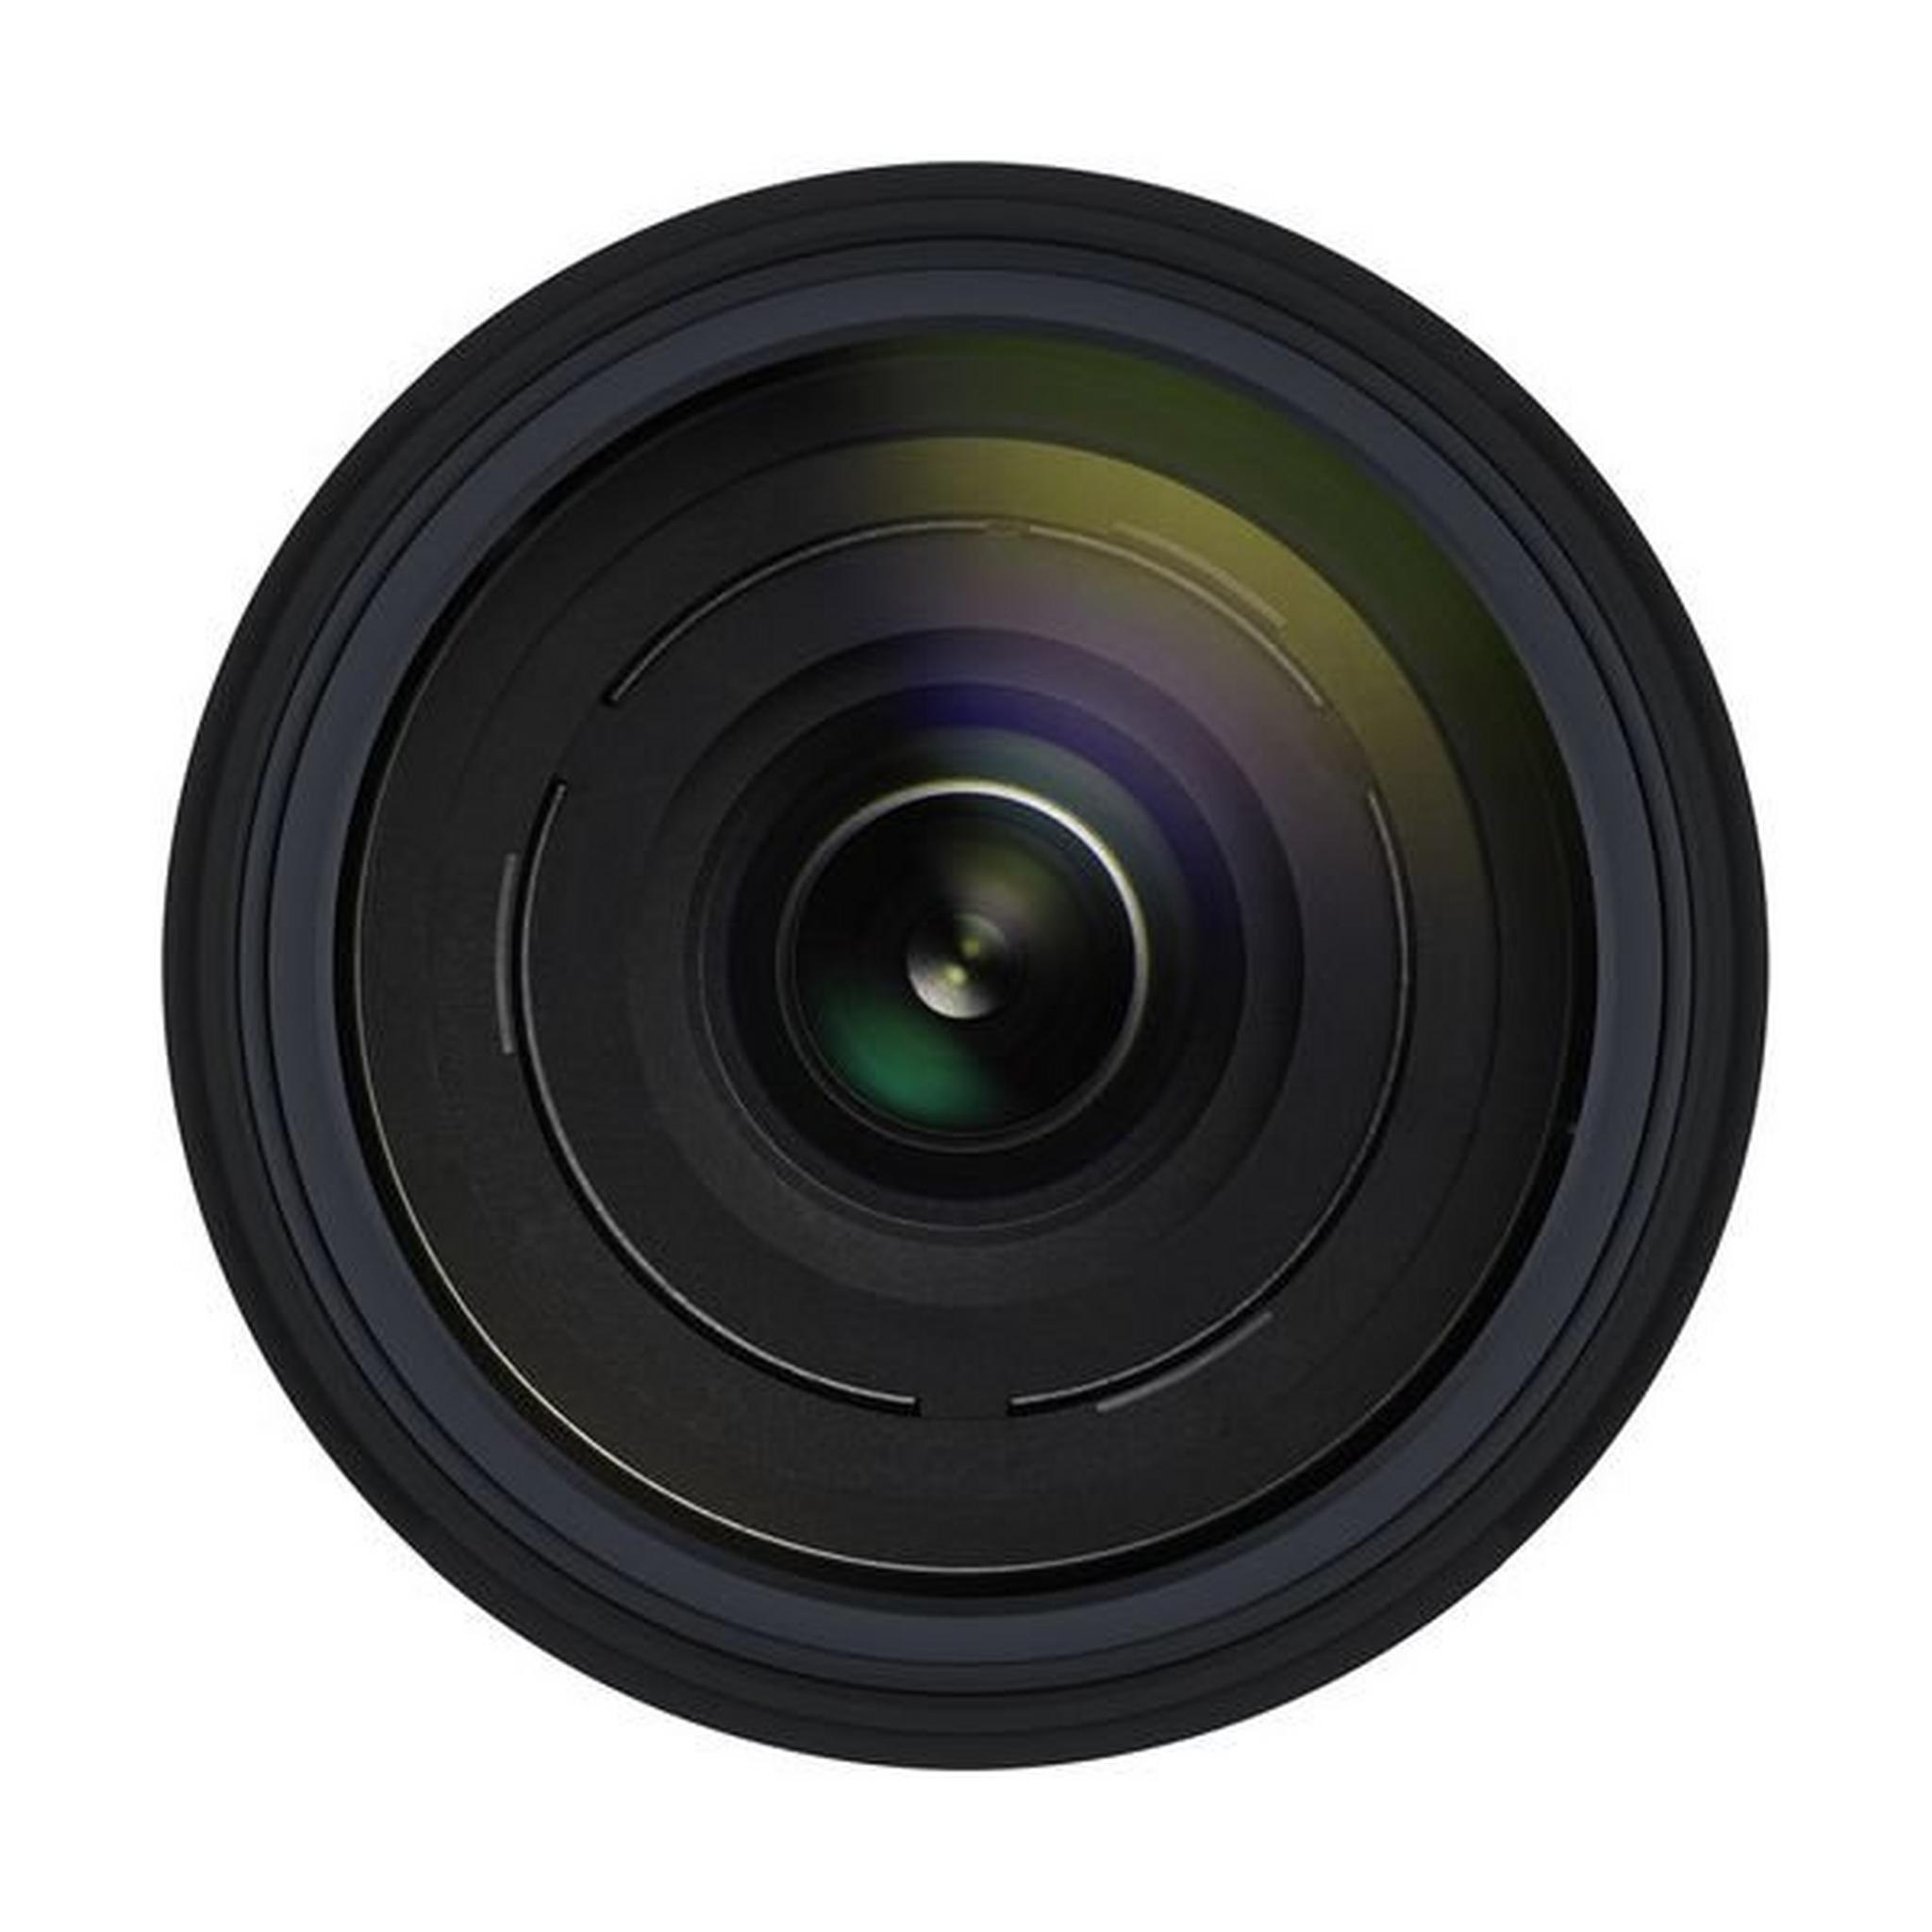 عدسة تامرون ١٨ - ٤٠٠ ملم لكاميرا كانون بفتحة قياس إف / ٣,٥ - ٦,٣، وتقنية تعويض الاهتزاز (VC)، ومشغل عزم الدوران العالي / والمنخفض (HLD)